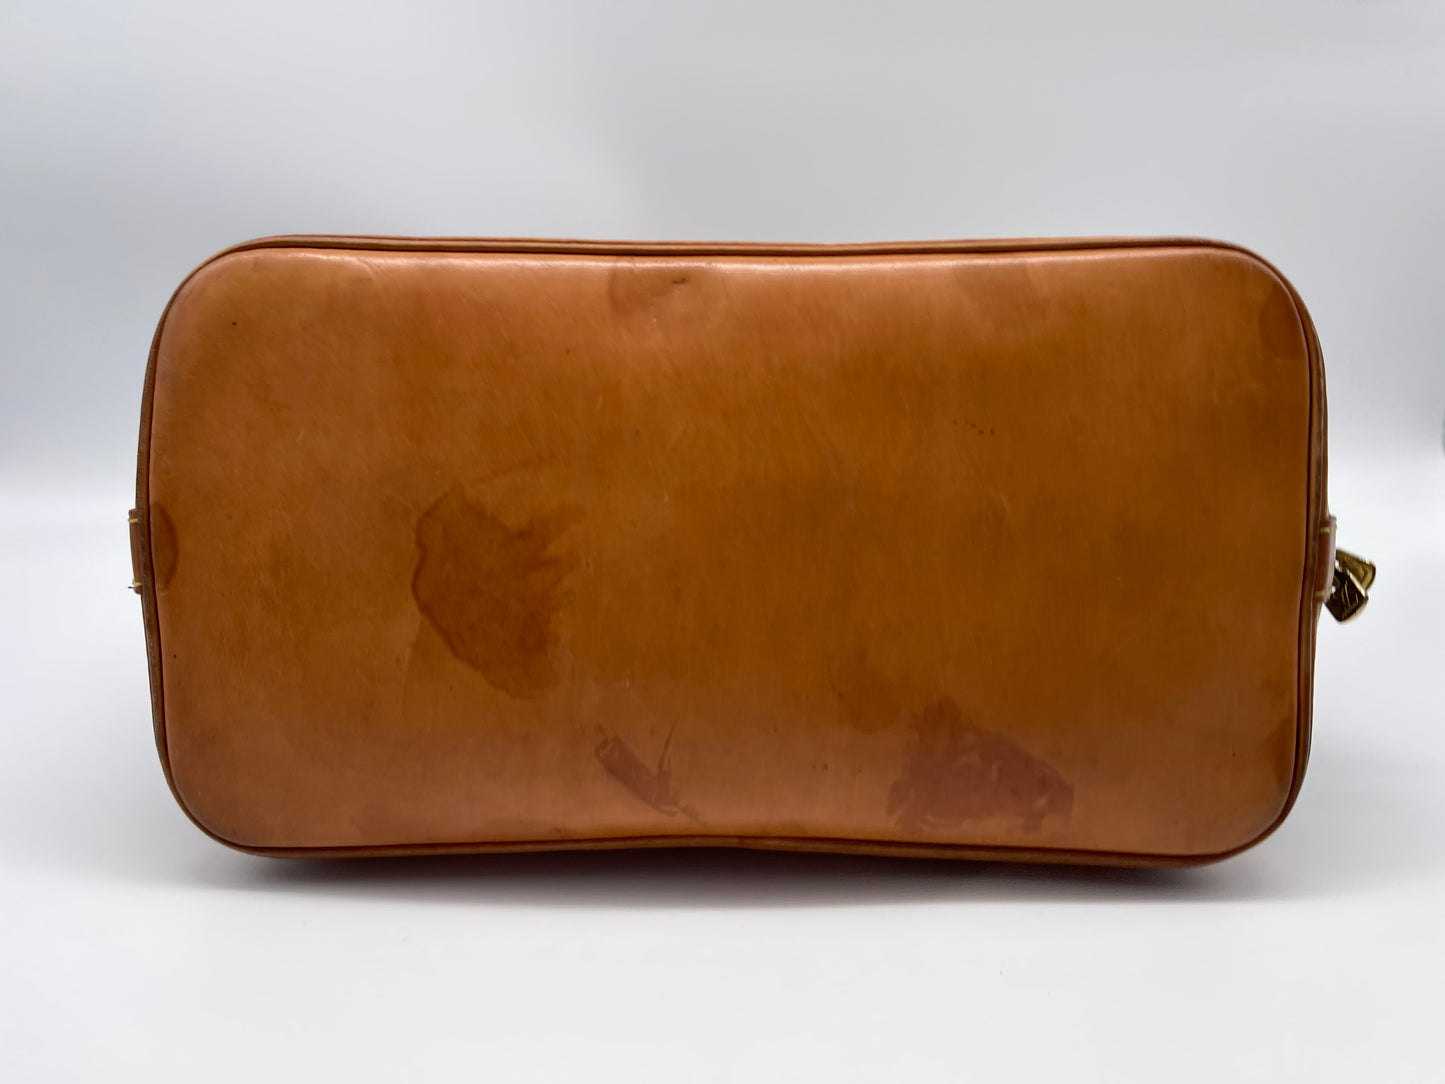 Louis Vuitton alma handbag